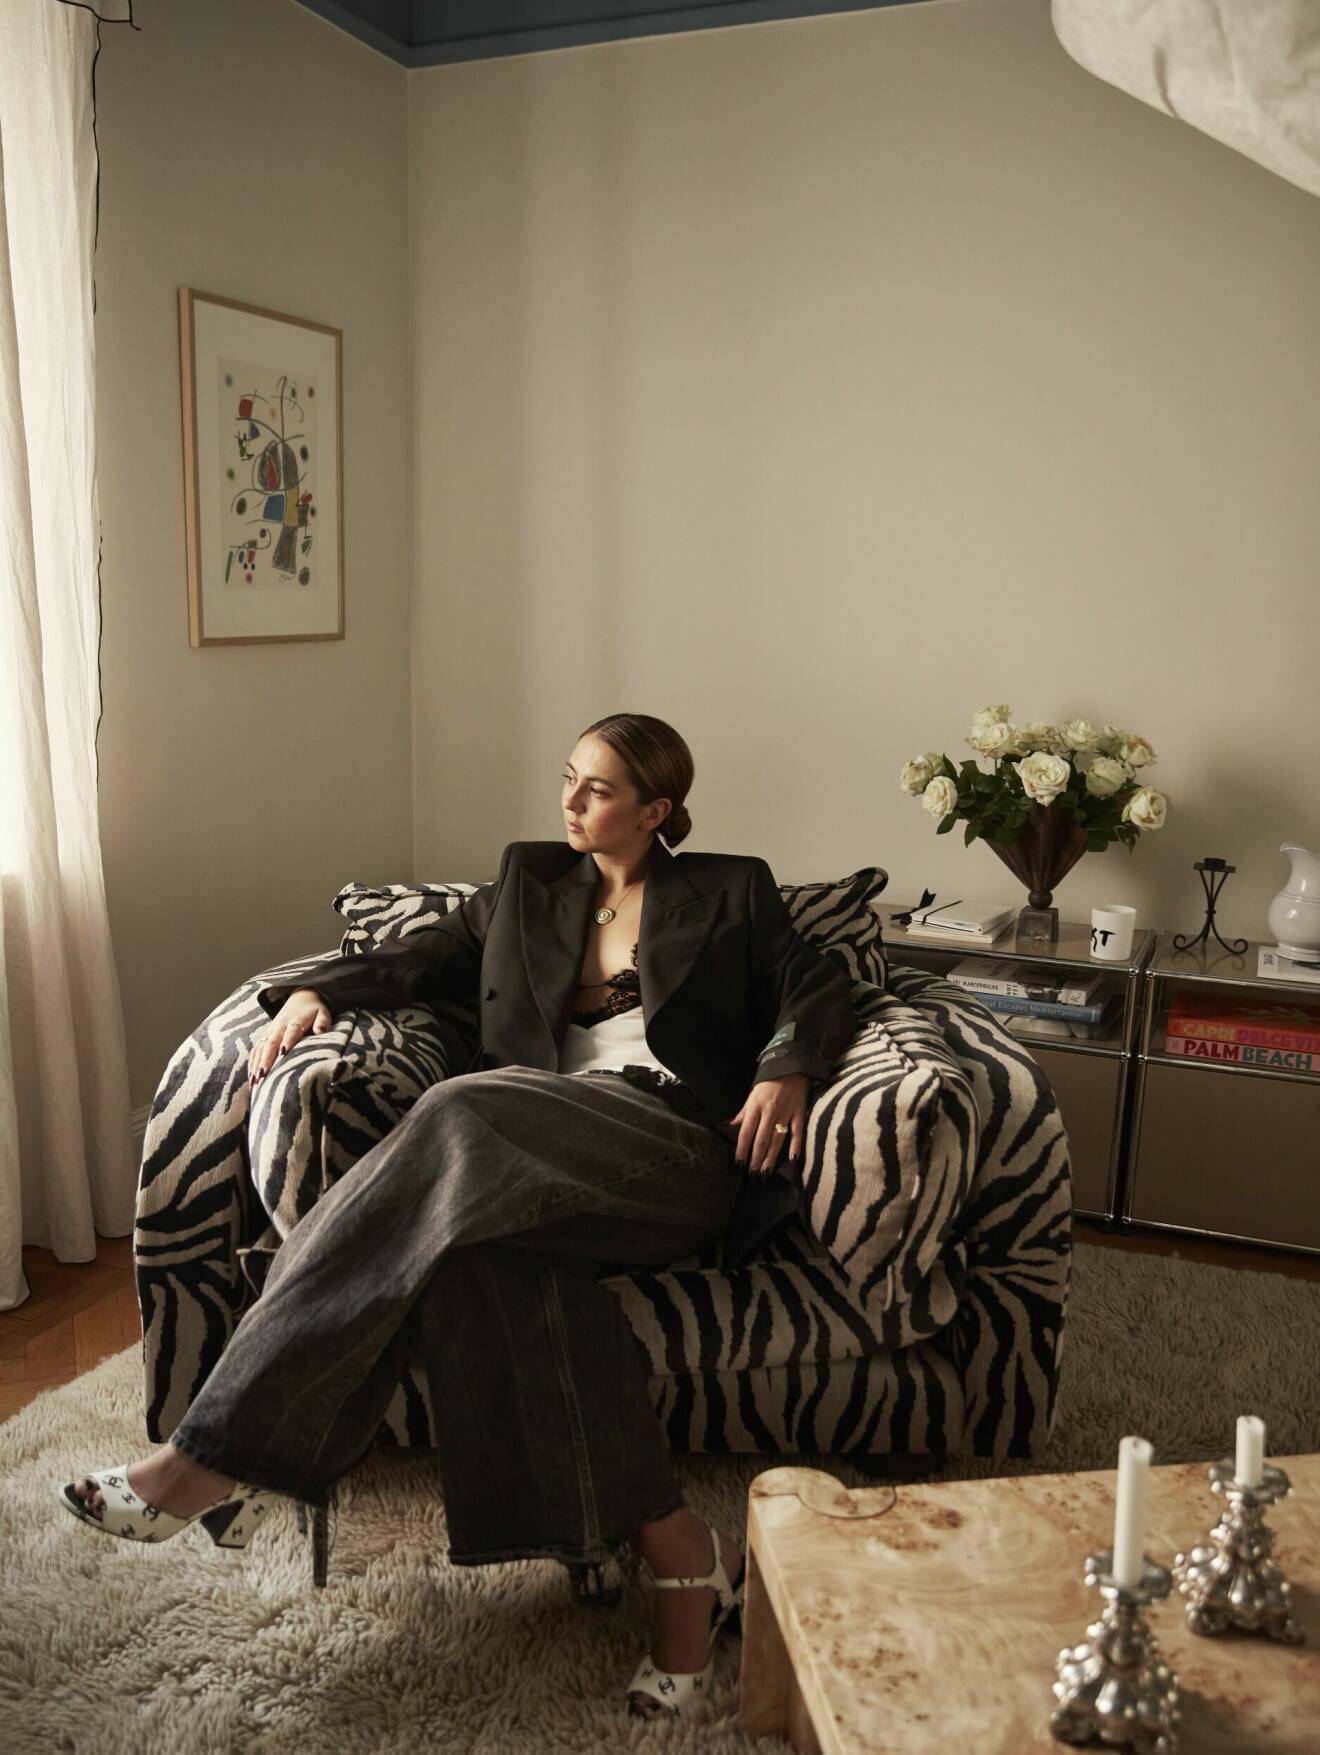 Hanna MW i zebramönstrad fåtölj i vardagsrummet med Miró-tavla från Palma